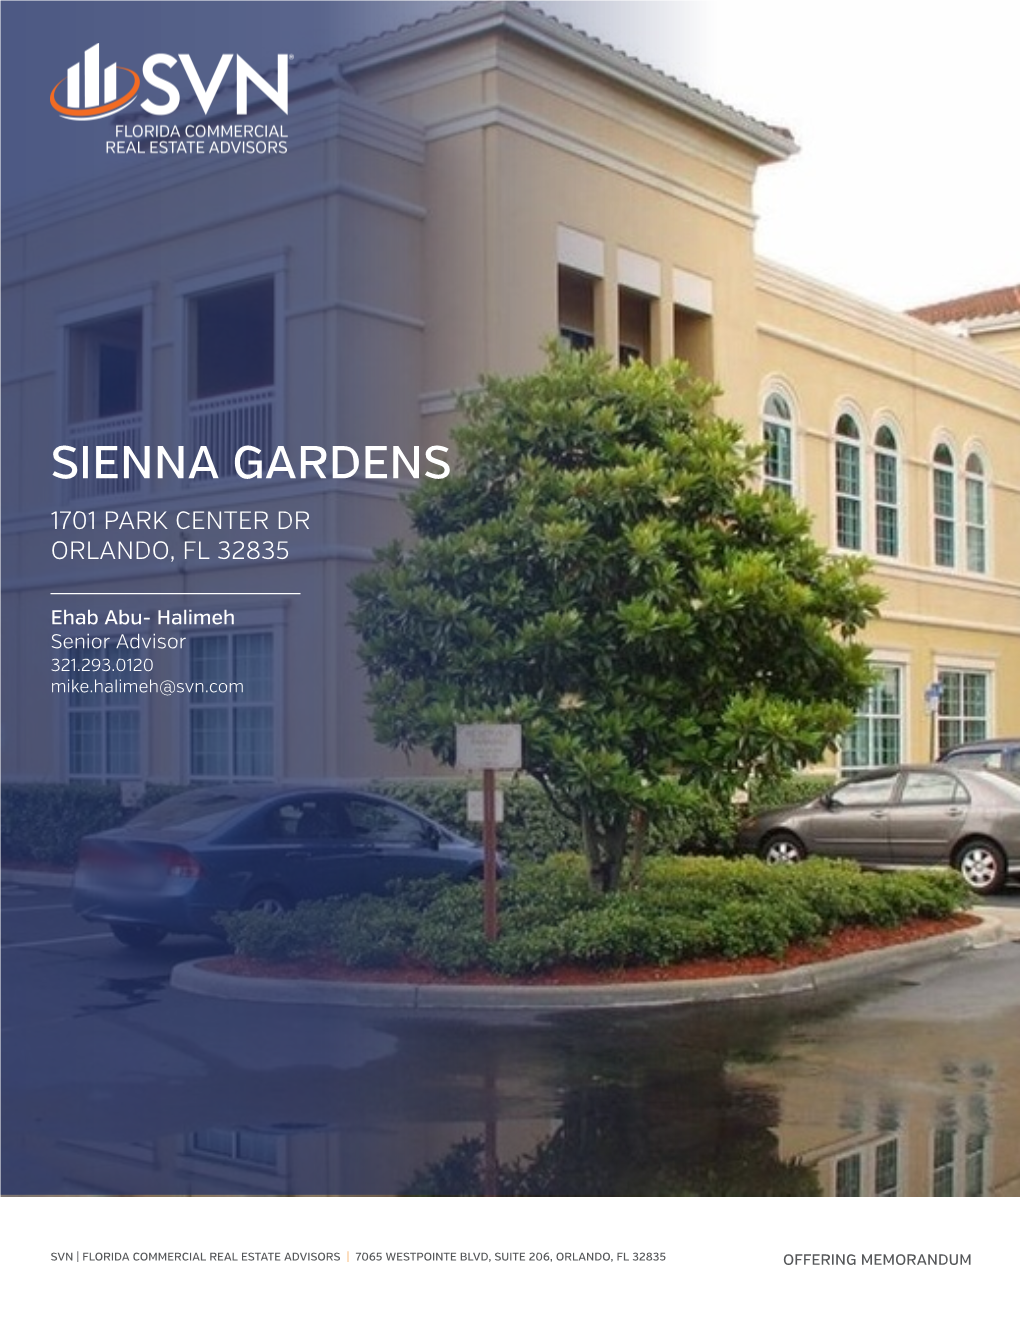 Sienna Gardens 1701 Park Center Dr Orlando, Fl 32835